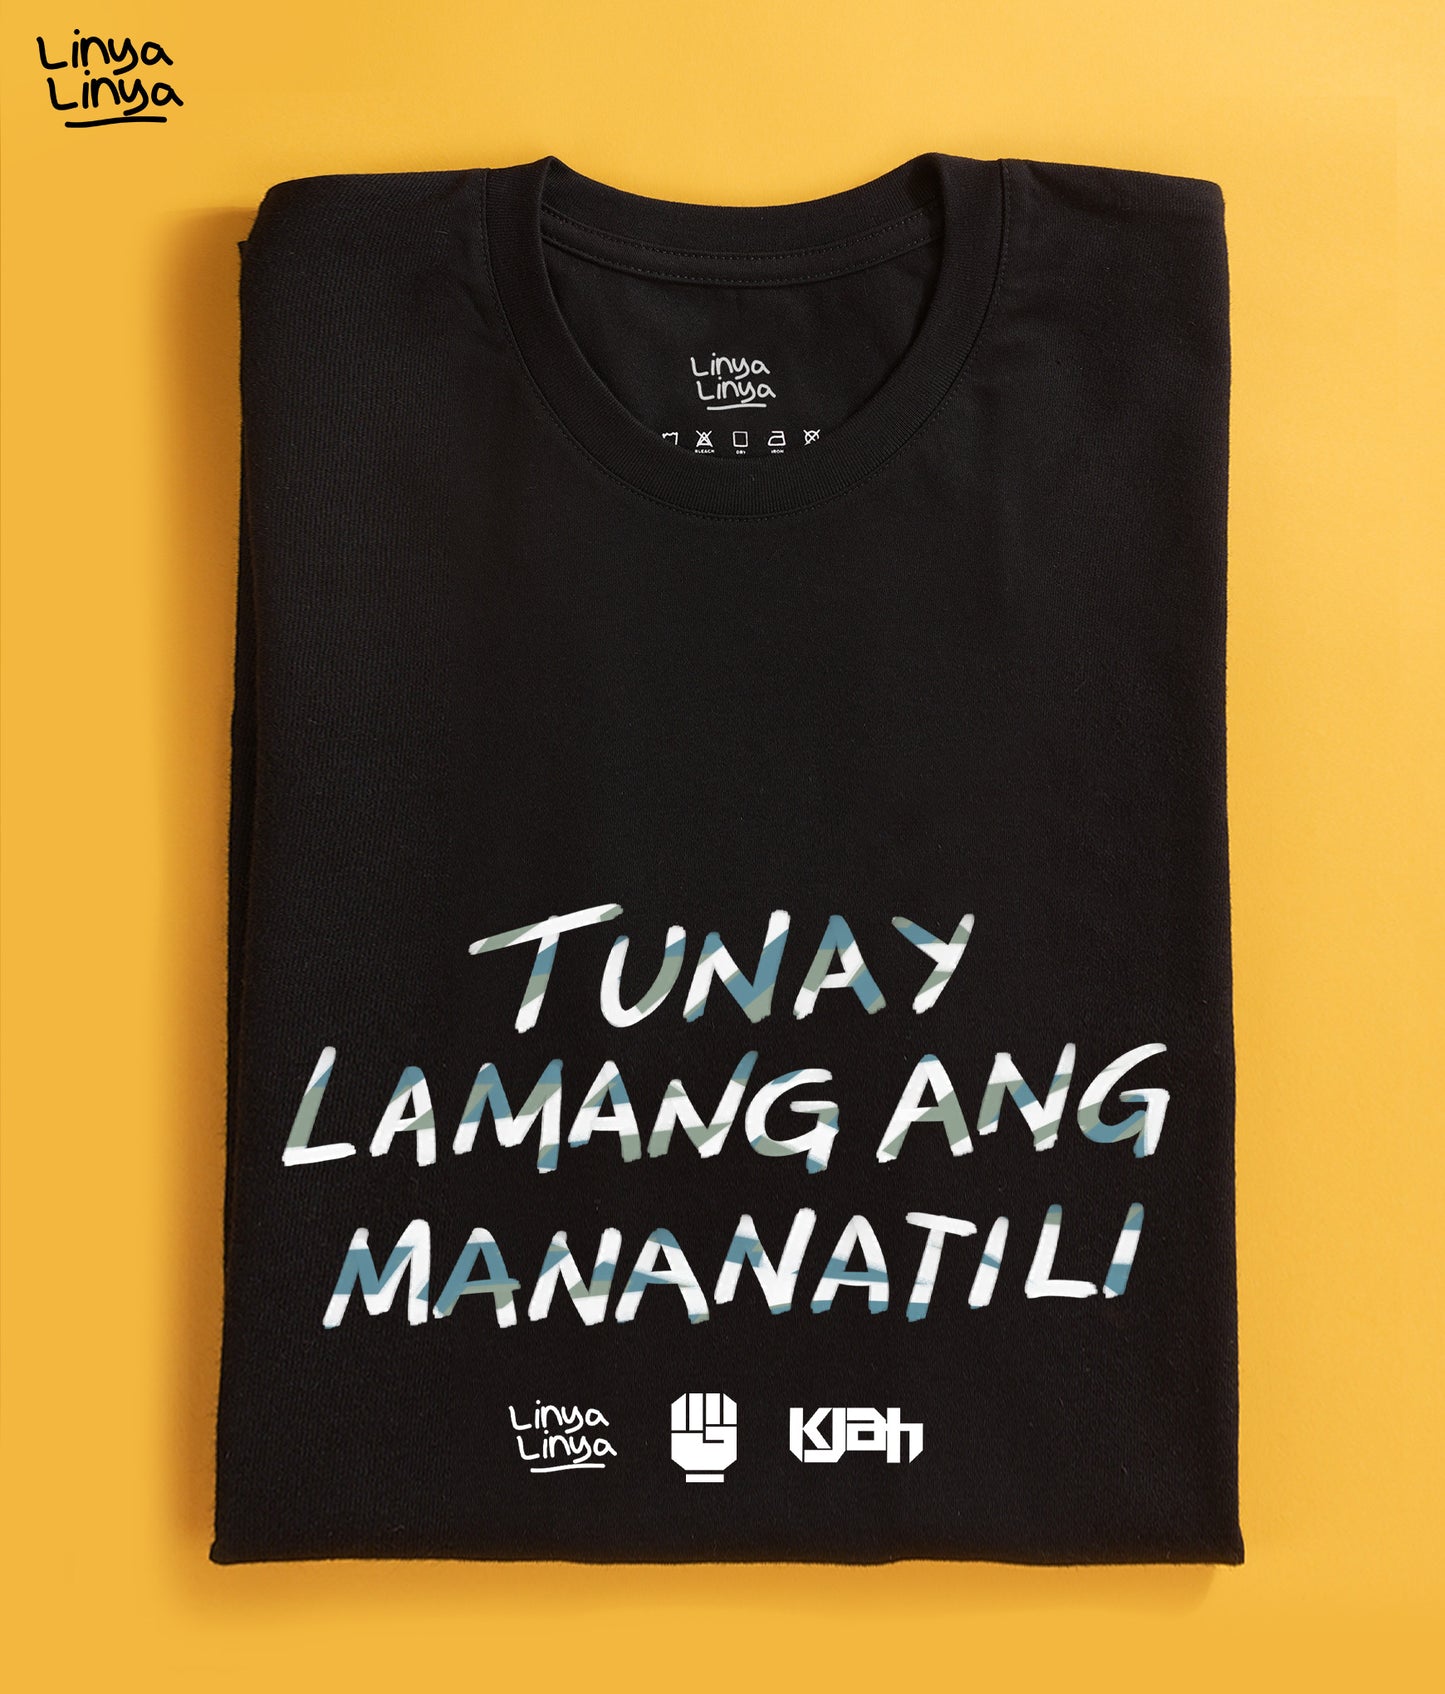 Linya-Linya x KJAH: Tunay Lamang Ang Mananatili (Black)